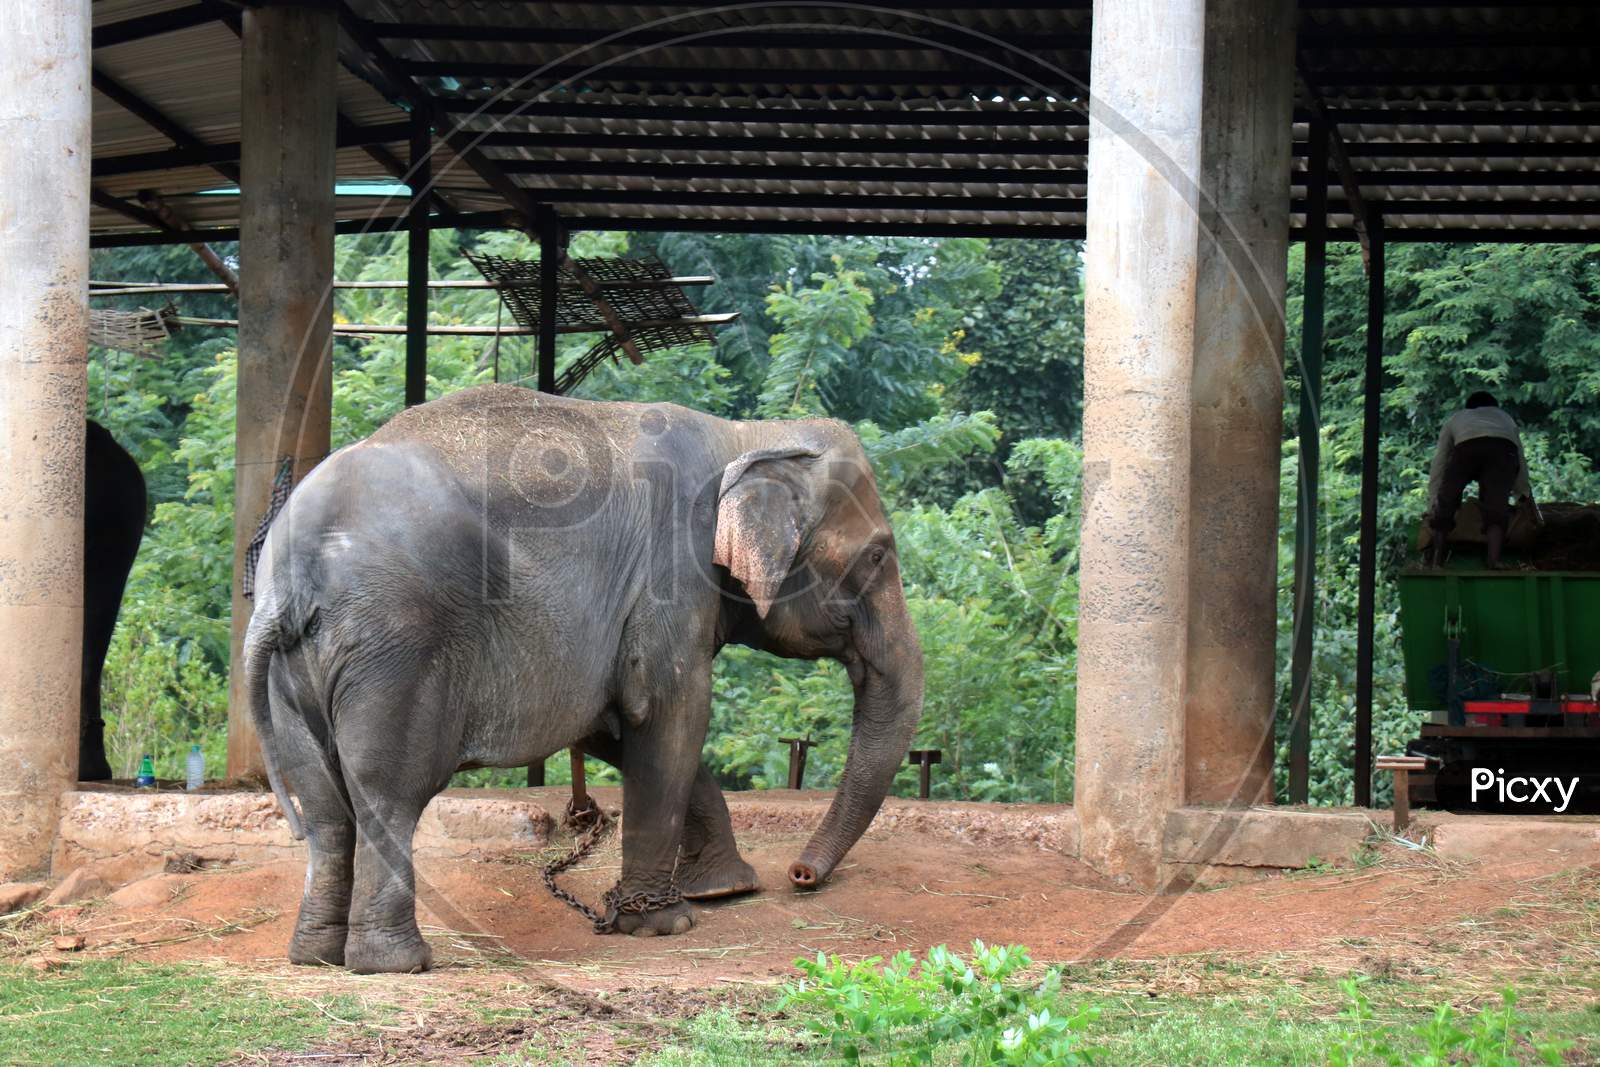 An Elephant walking in a Zoo